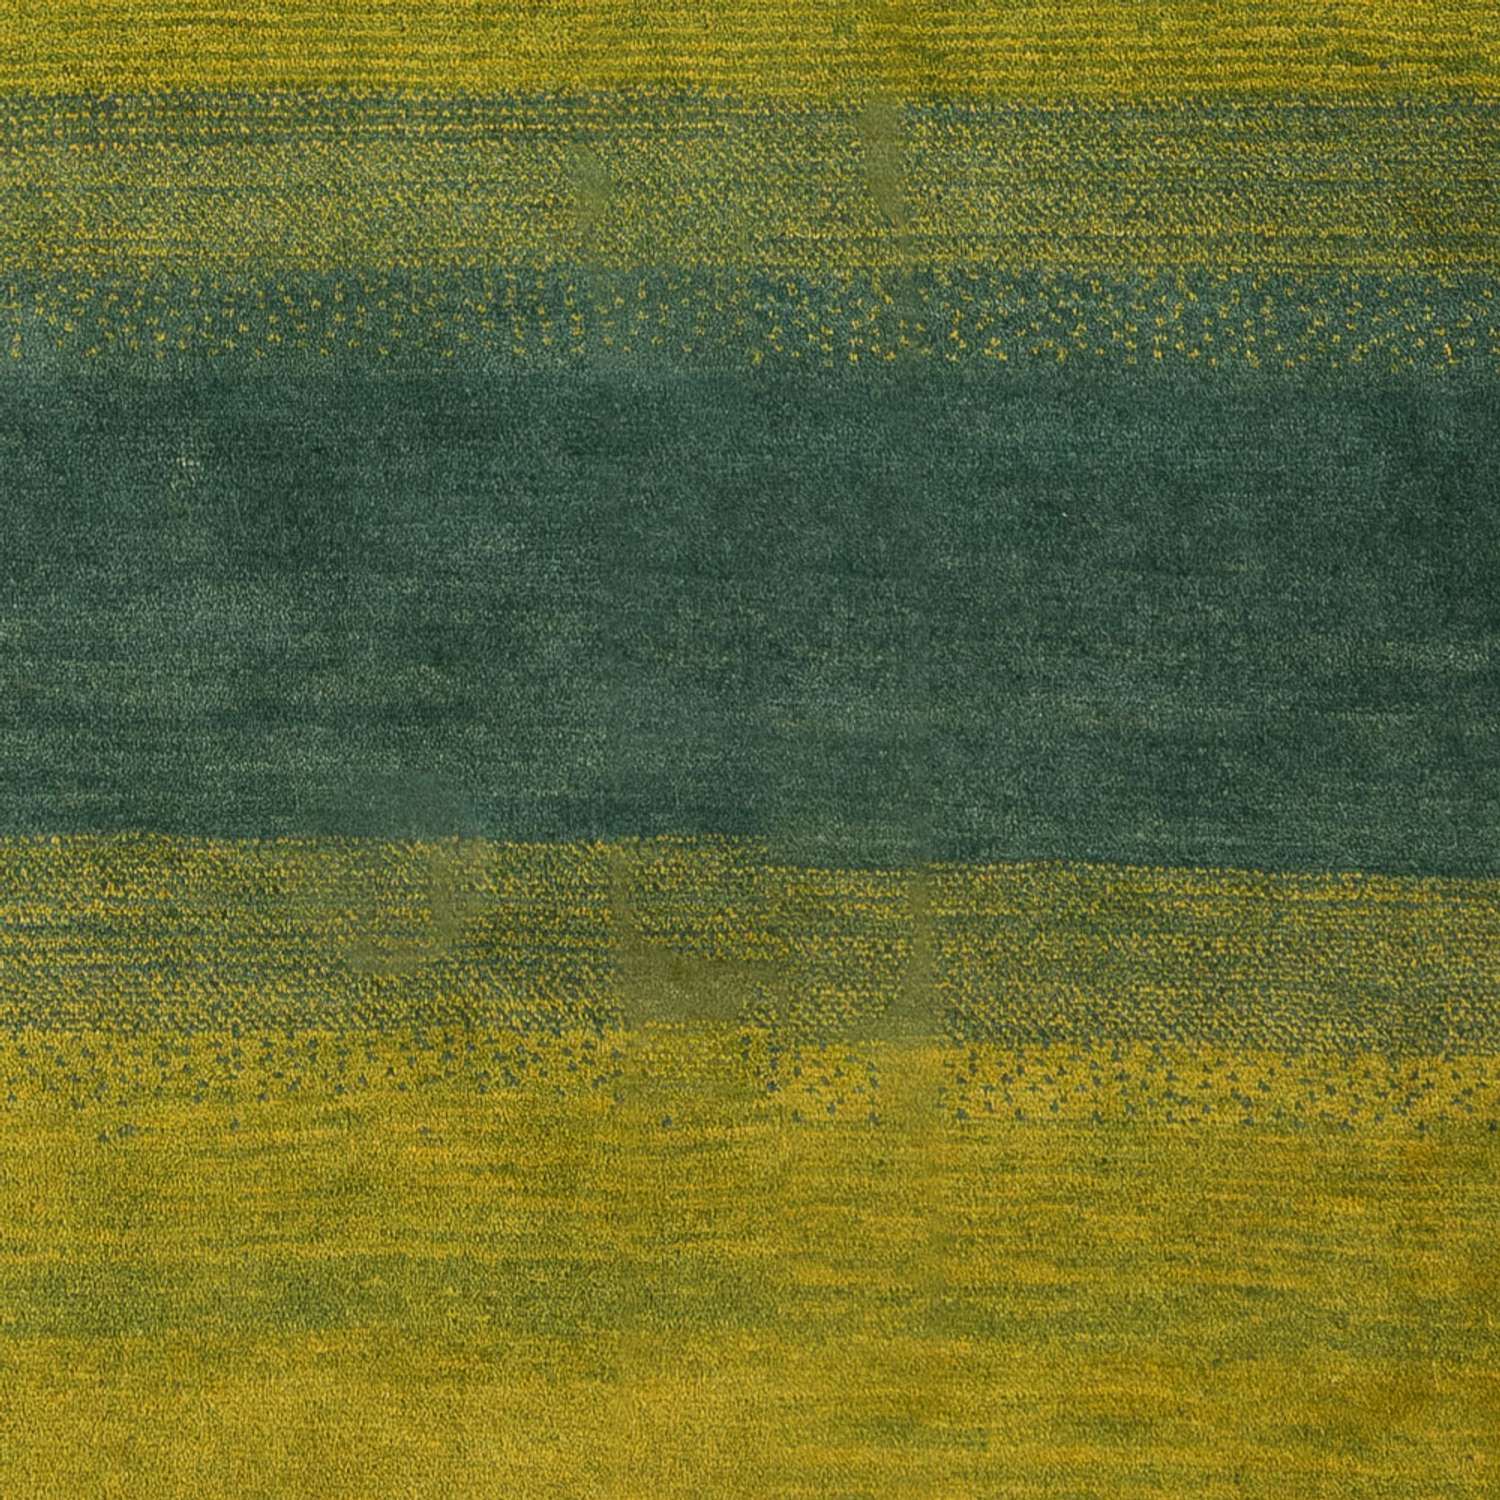 Tapis Gabbeh - Persan - 204 x 152 cm - vert